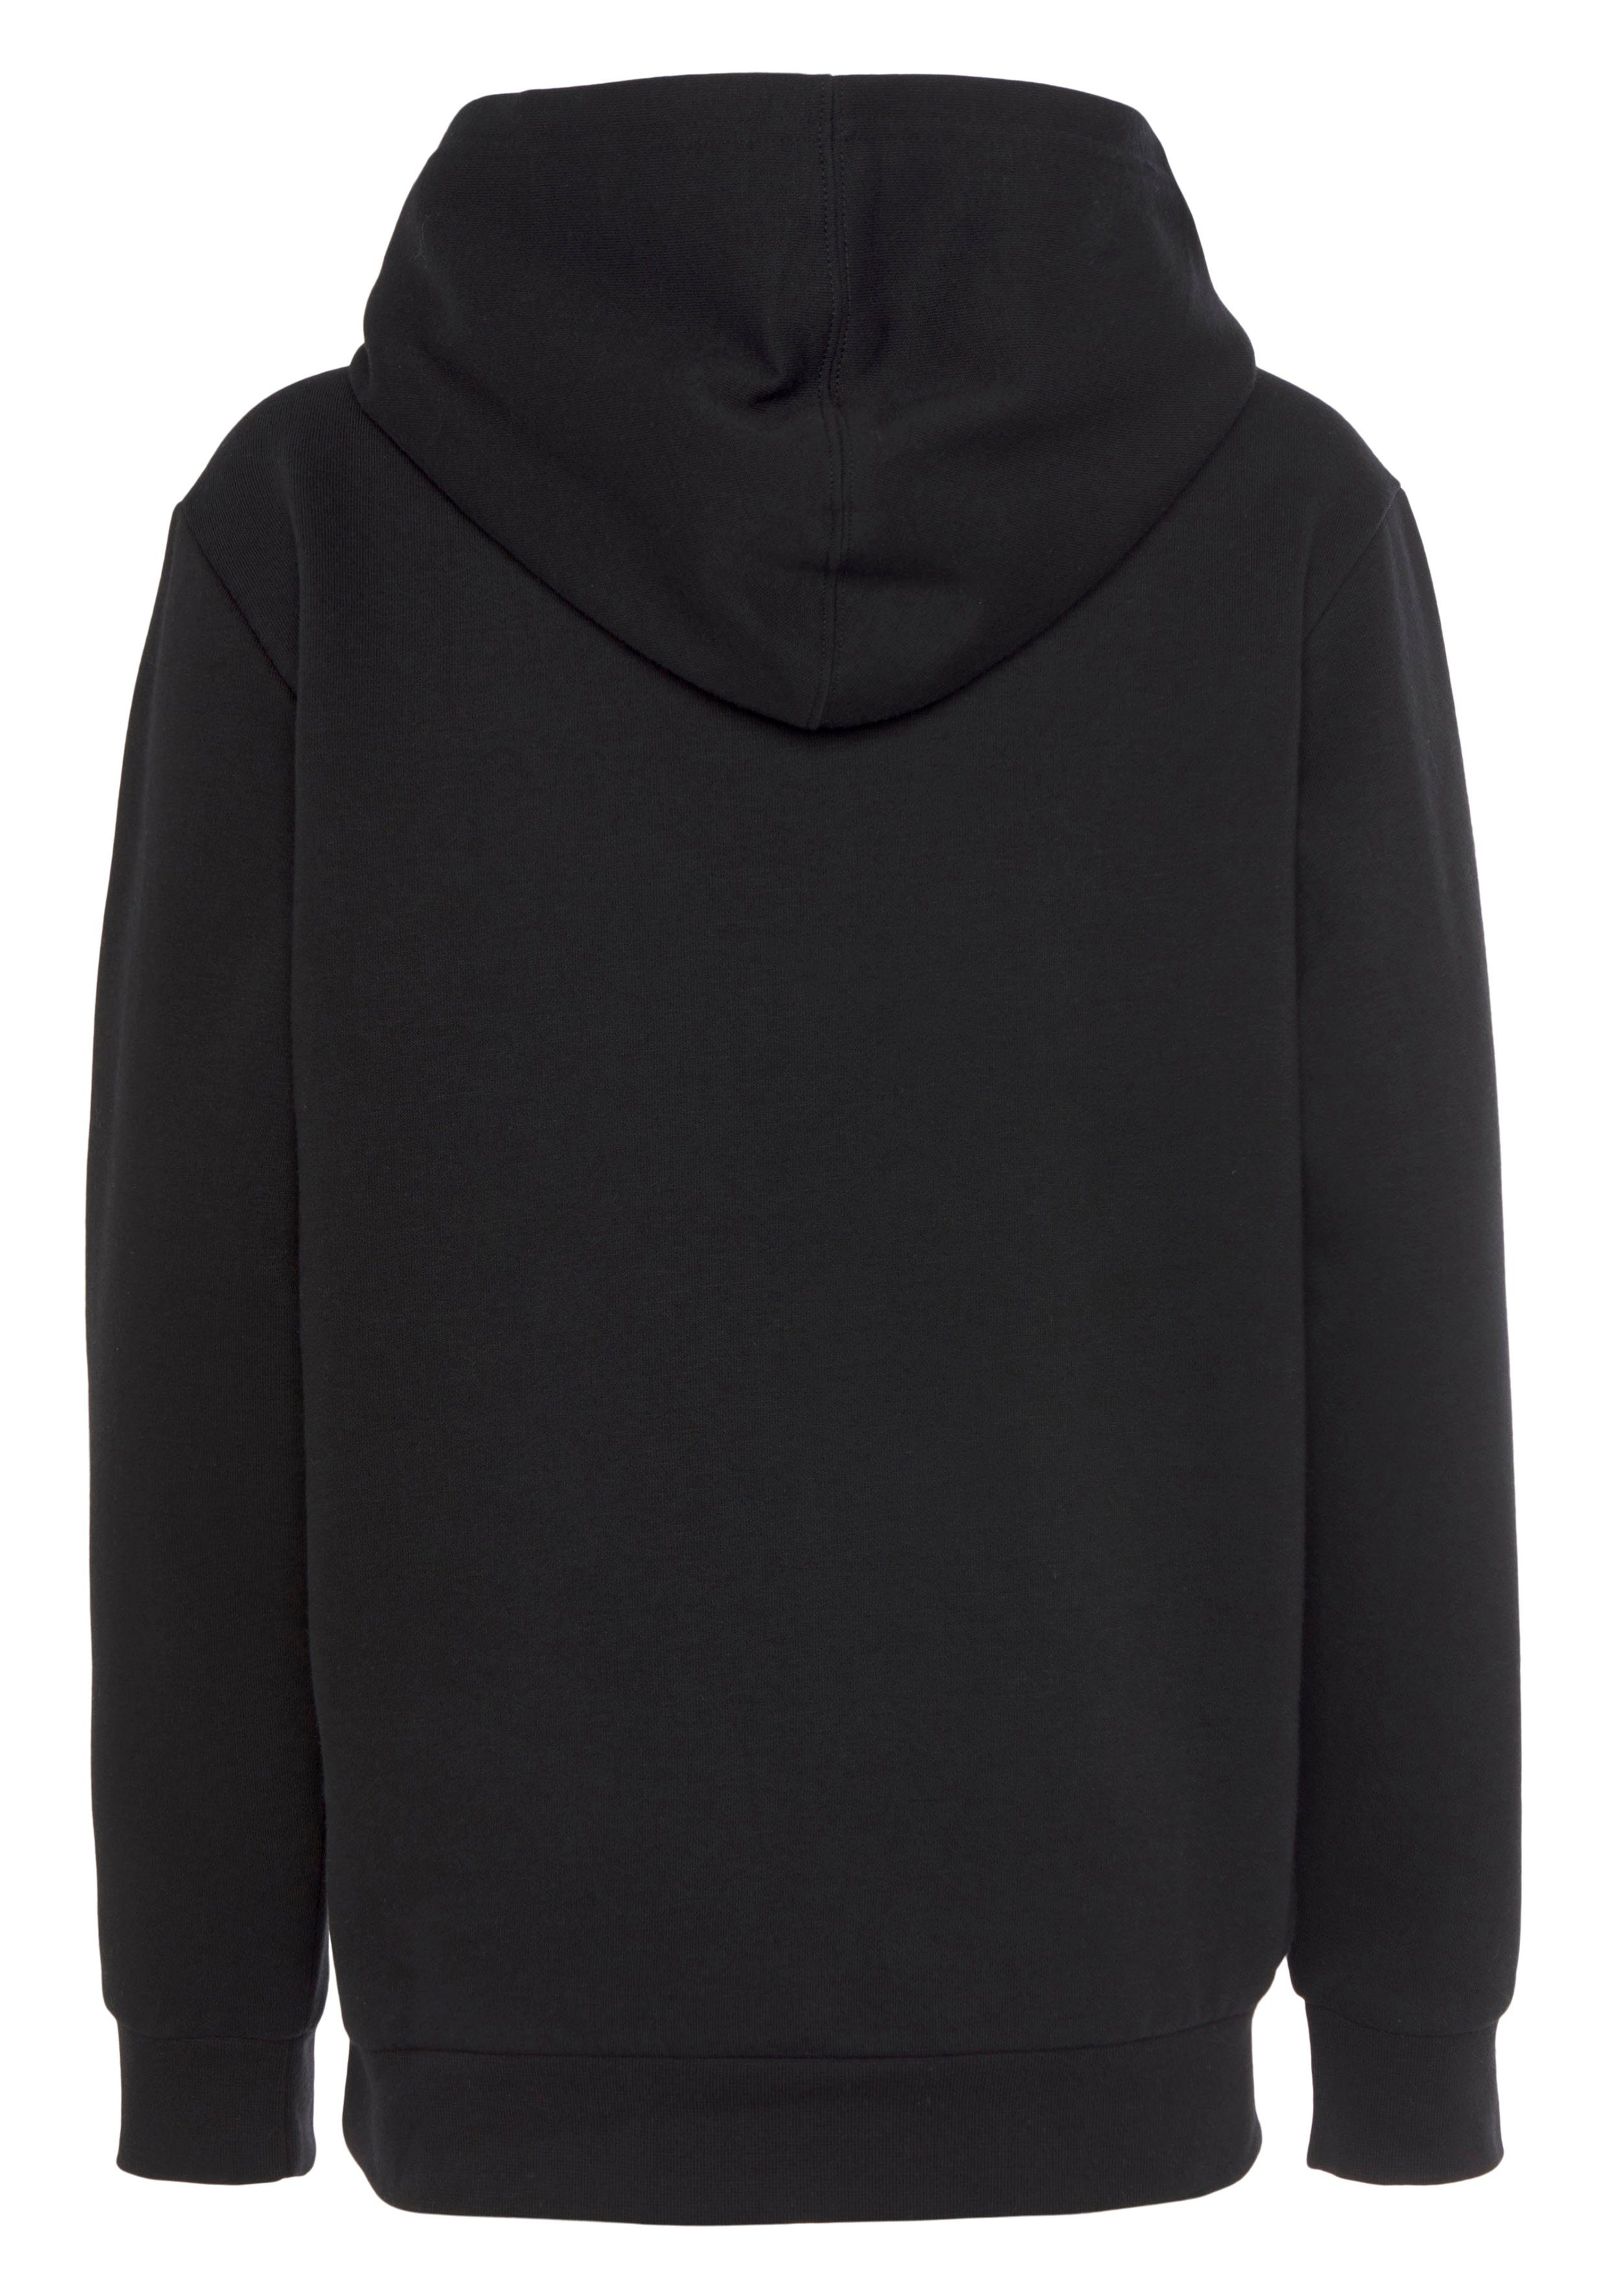 Sweatshirt schwarz Kinder - Hooded Sweatshirt Basic für Champion